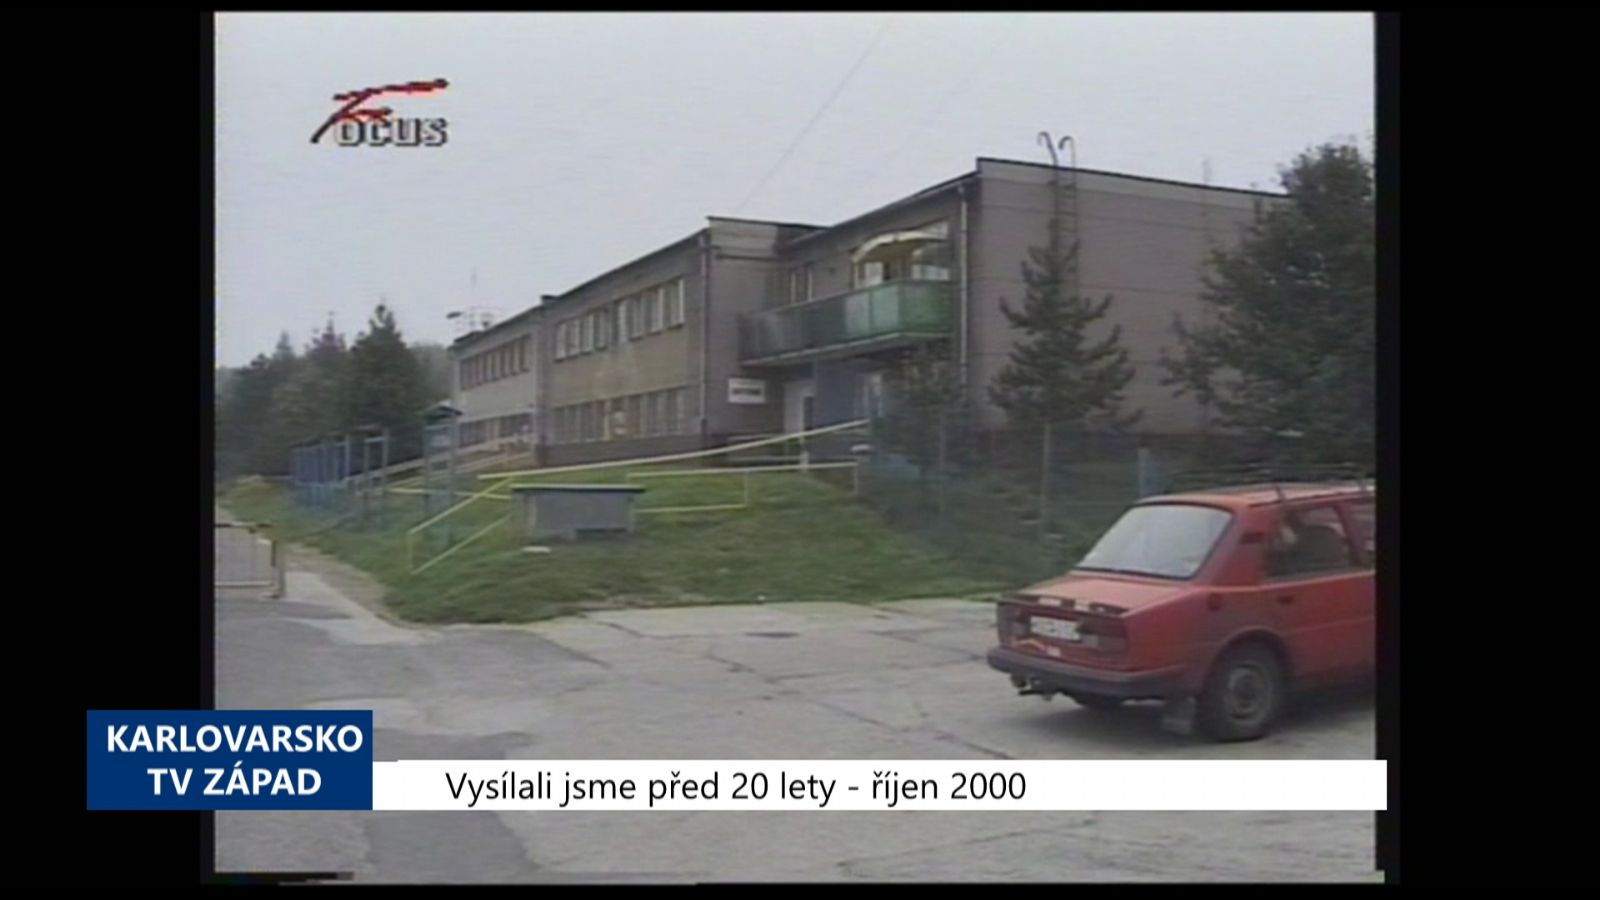 2000 – Sokolov: Ubytovnu TJ Baník čeká rekonstrukce (TV Západ) 